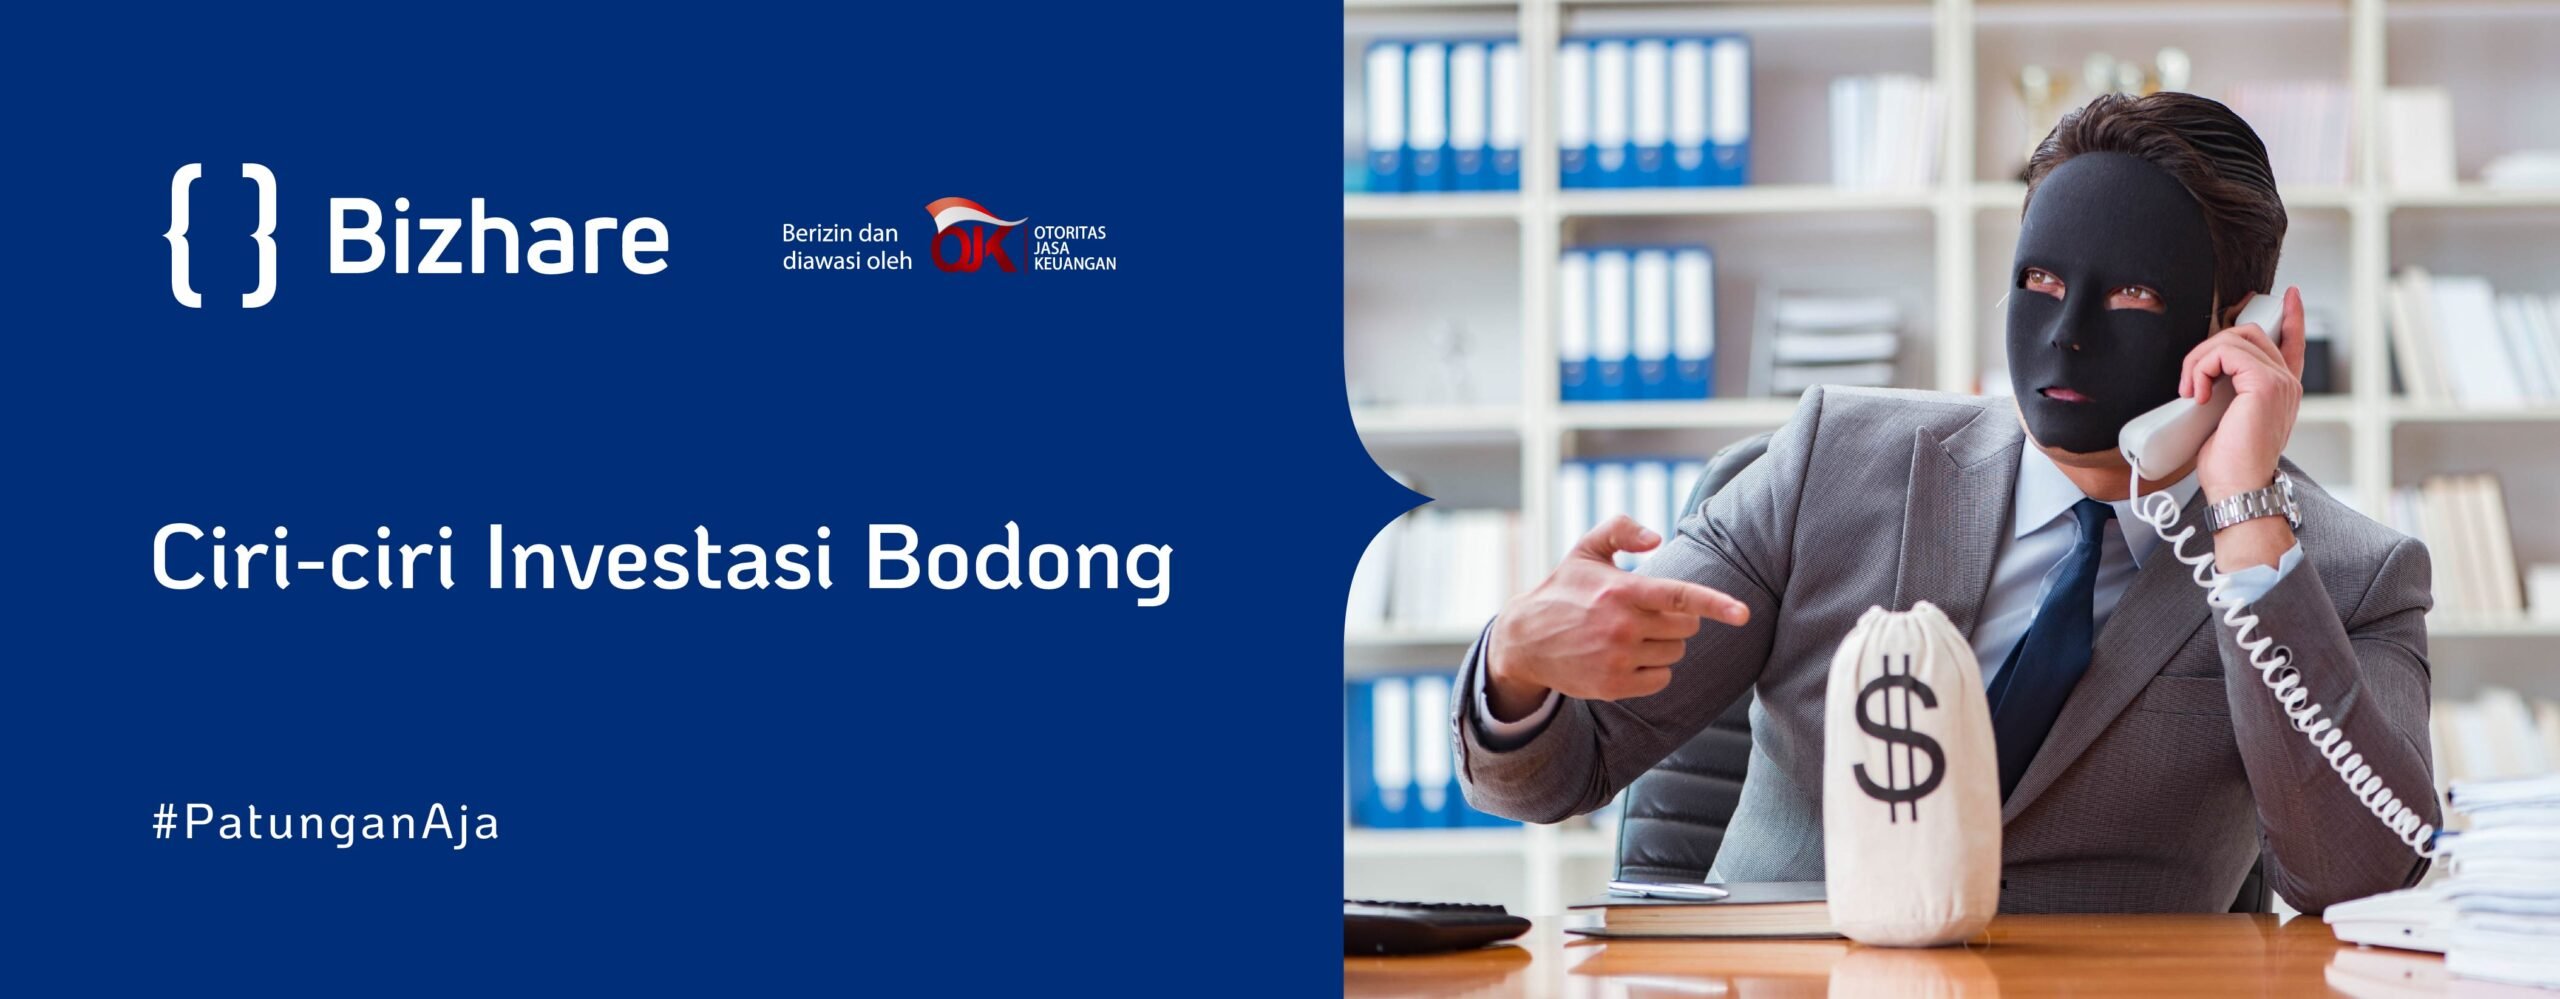 Ciri-ciri Investasi Bodong